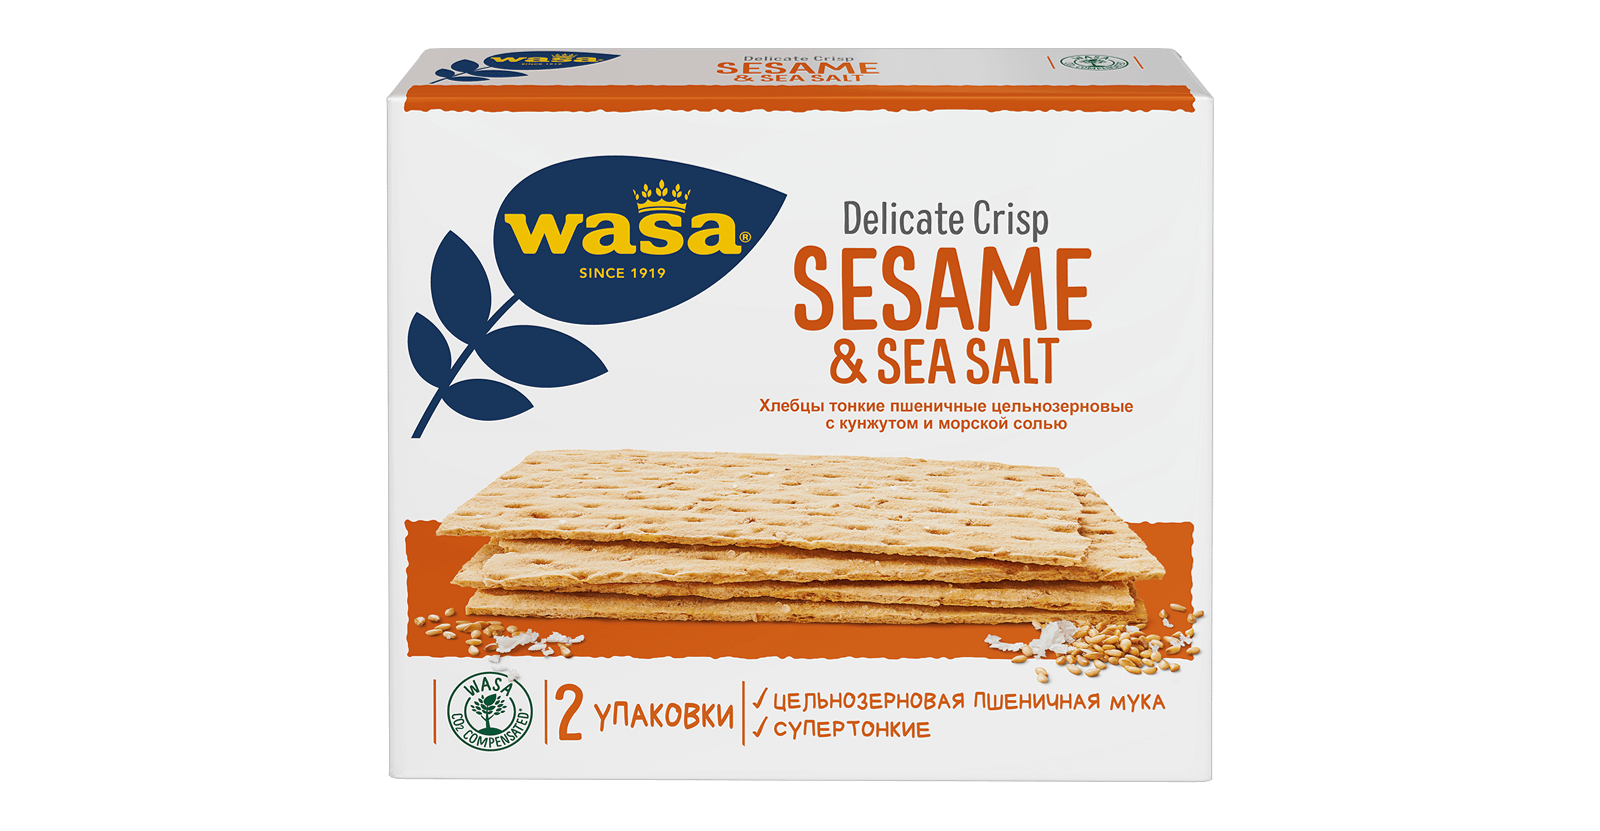 Delicate Crisp Sesame & Sea Salt